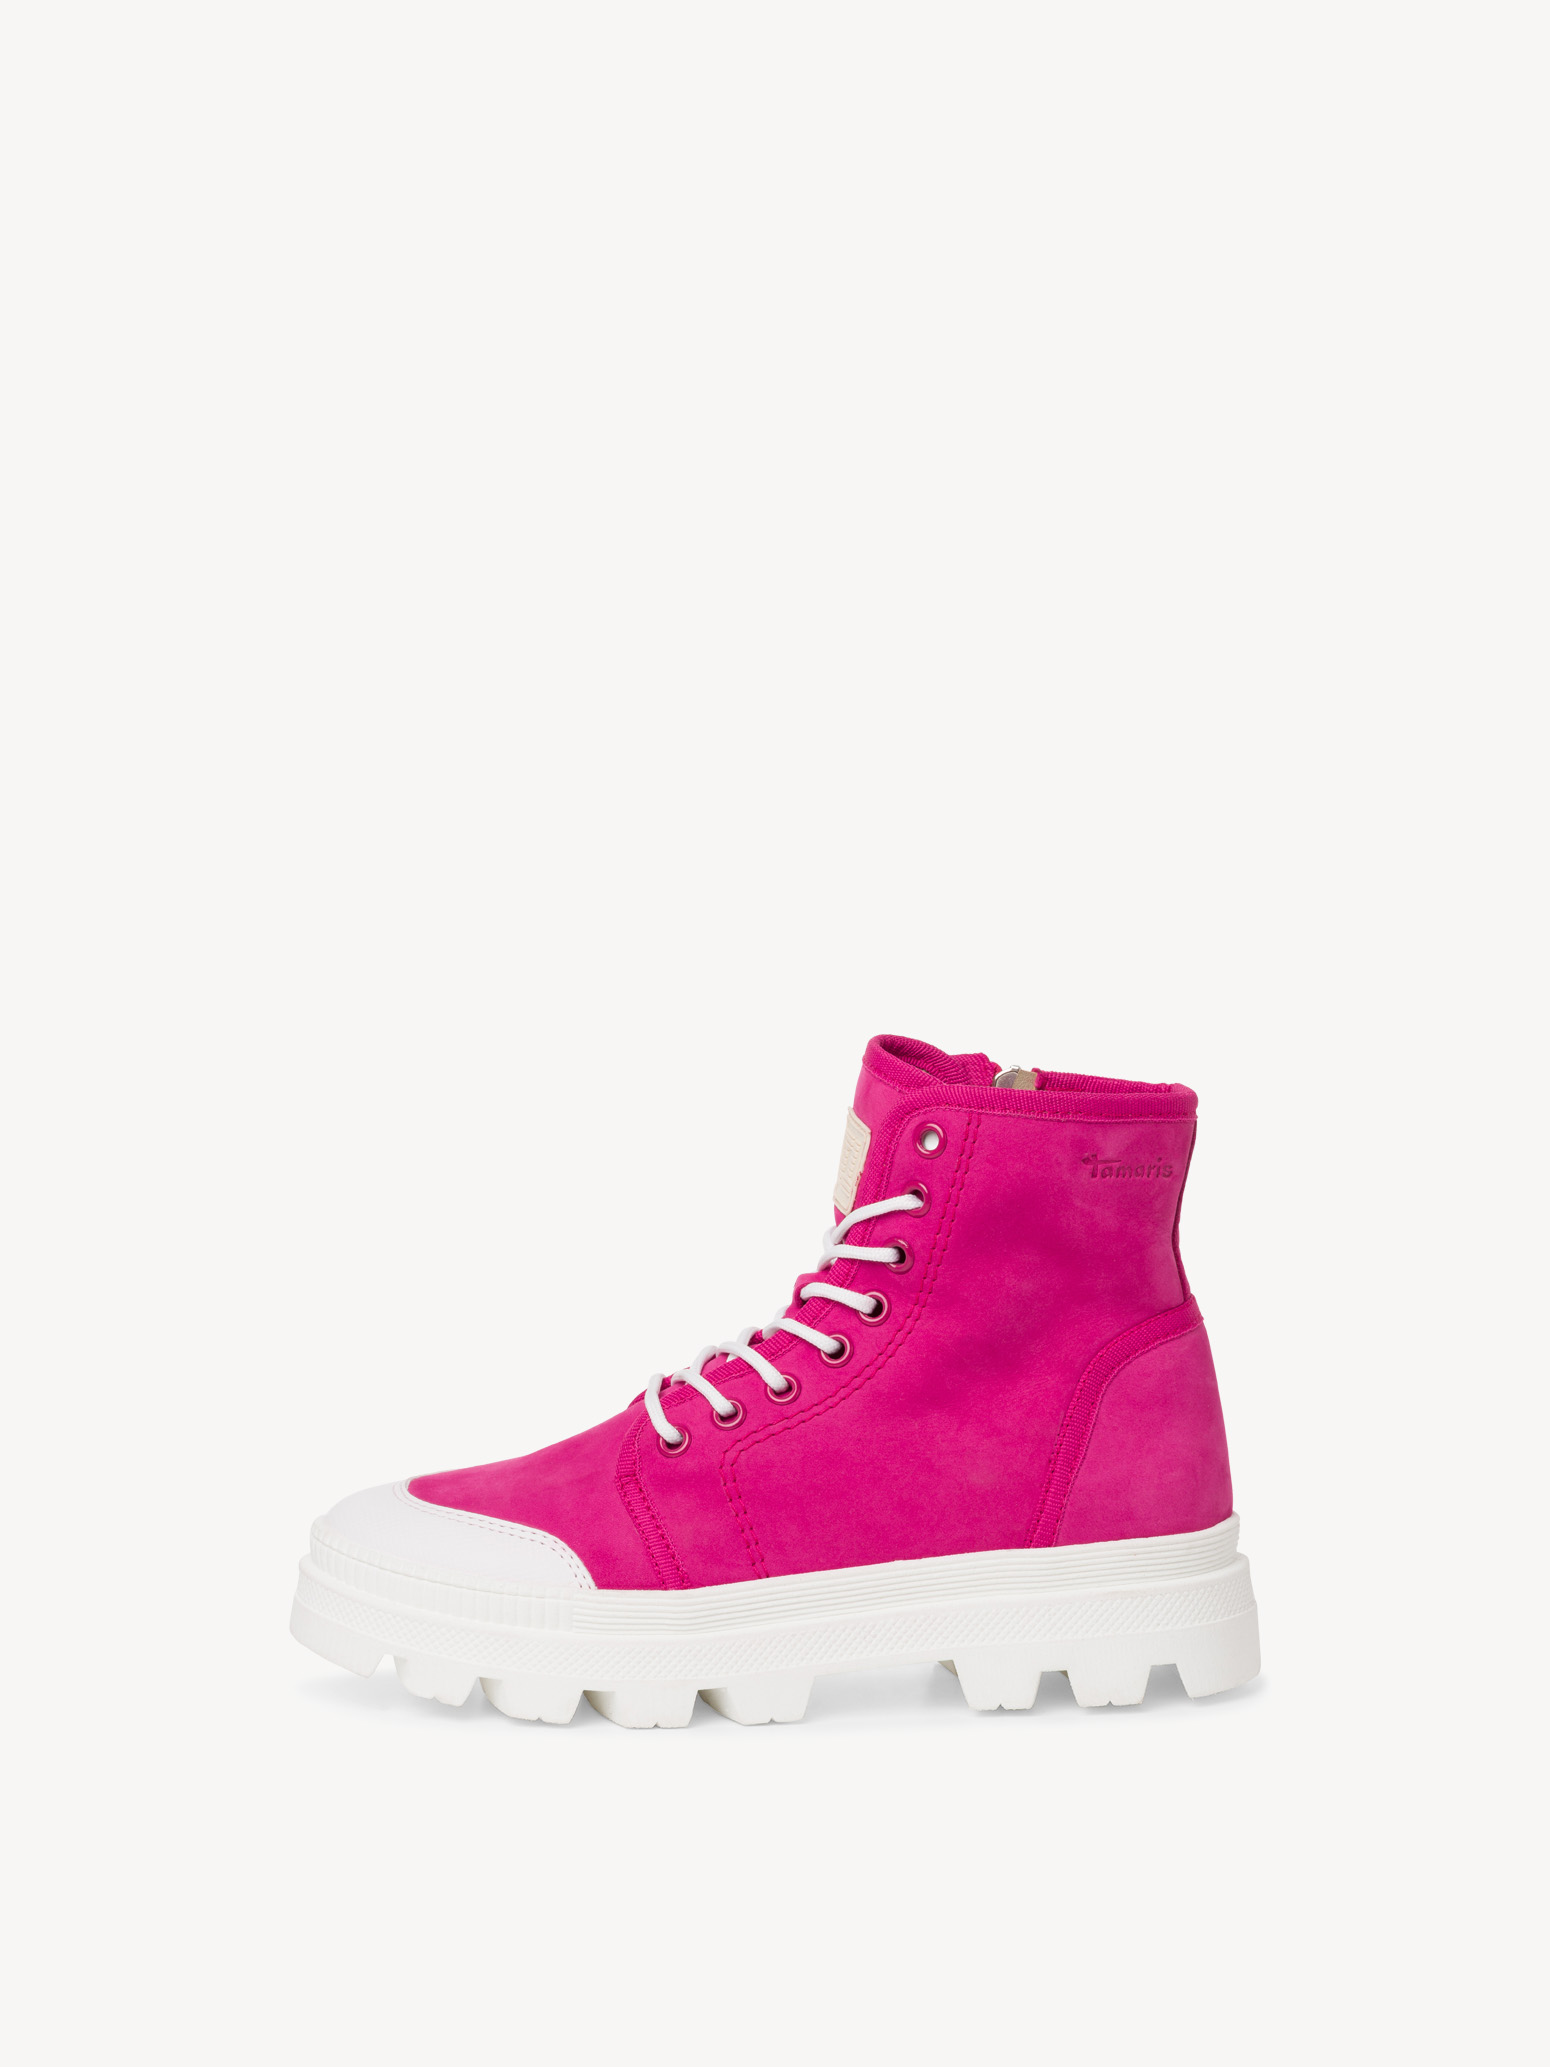 Stiefelette - 1-1-25406-20-513: Boots pink & kaufen! Stiefeletten Tamaris online